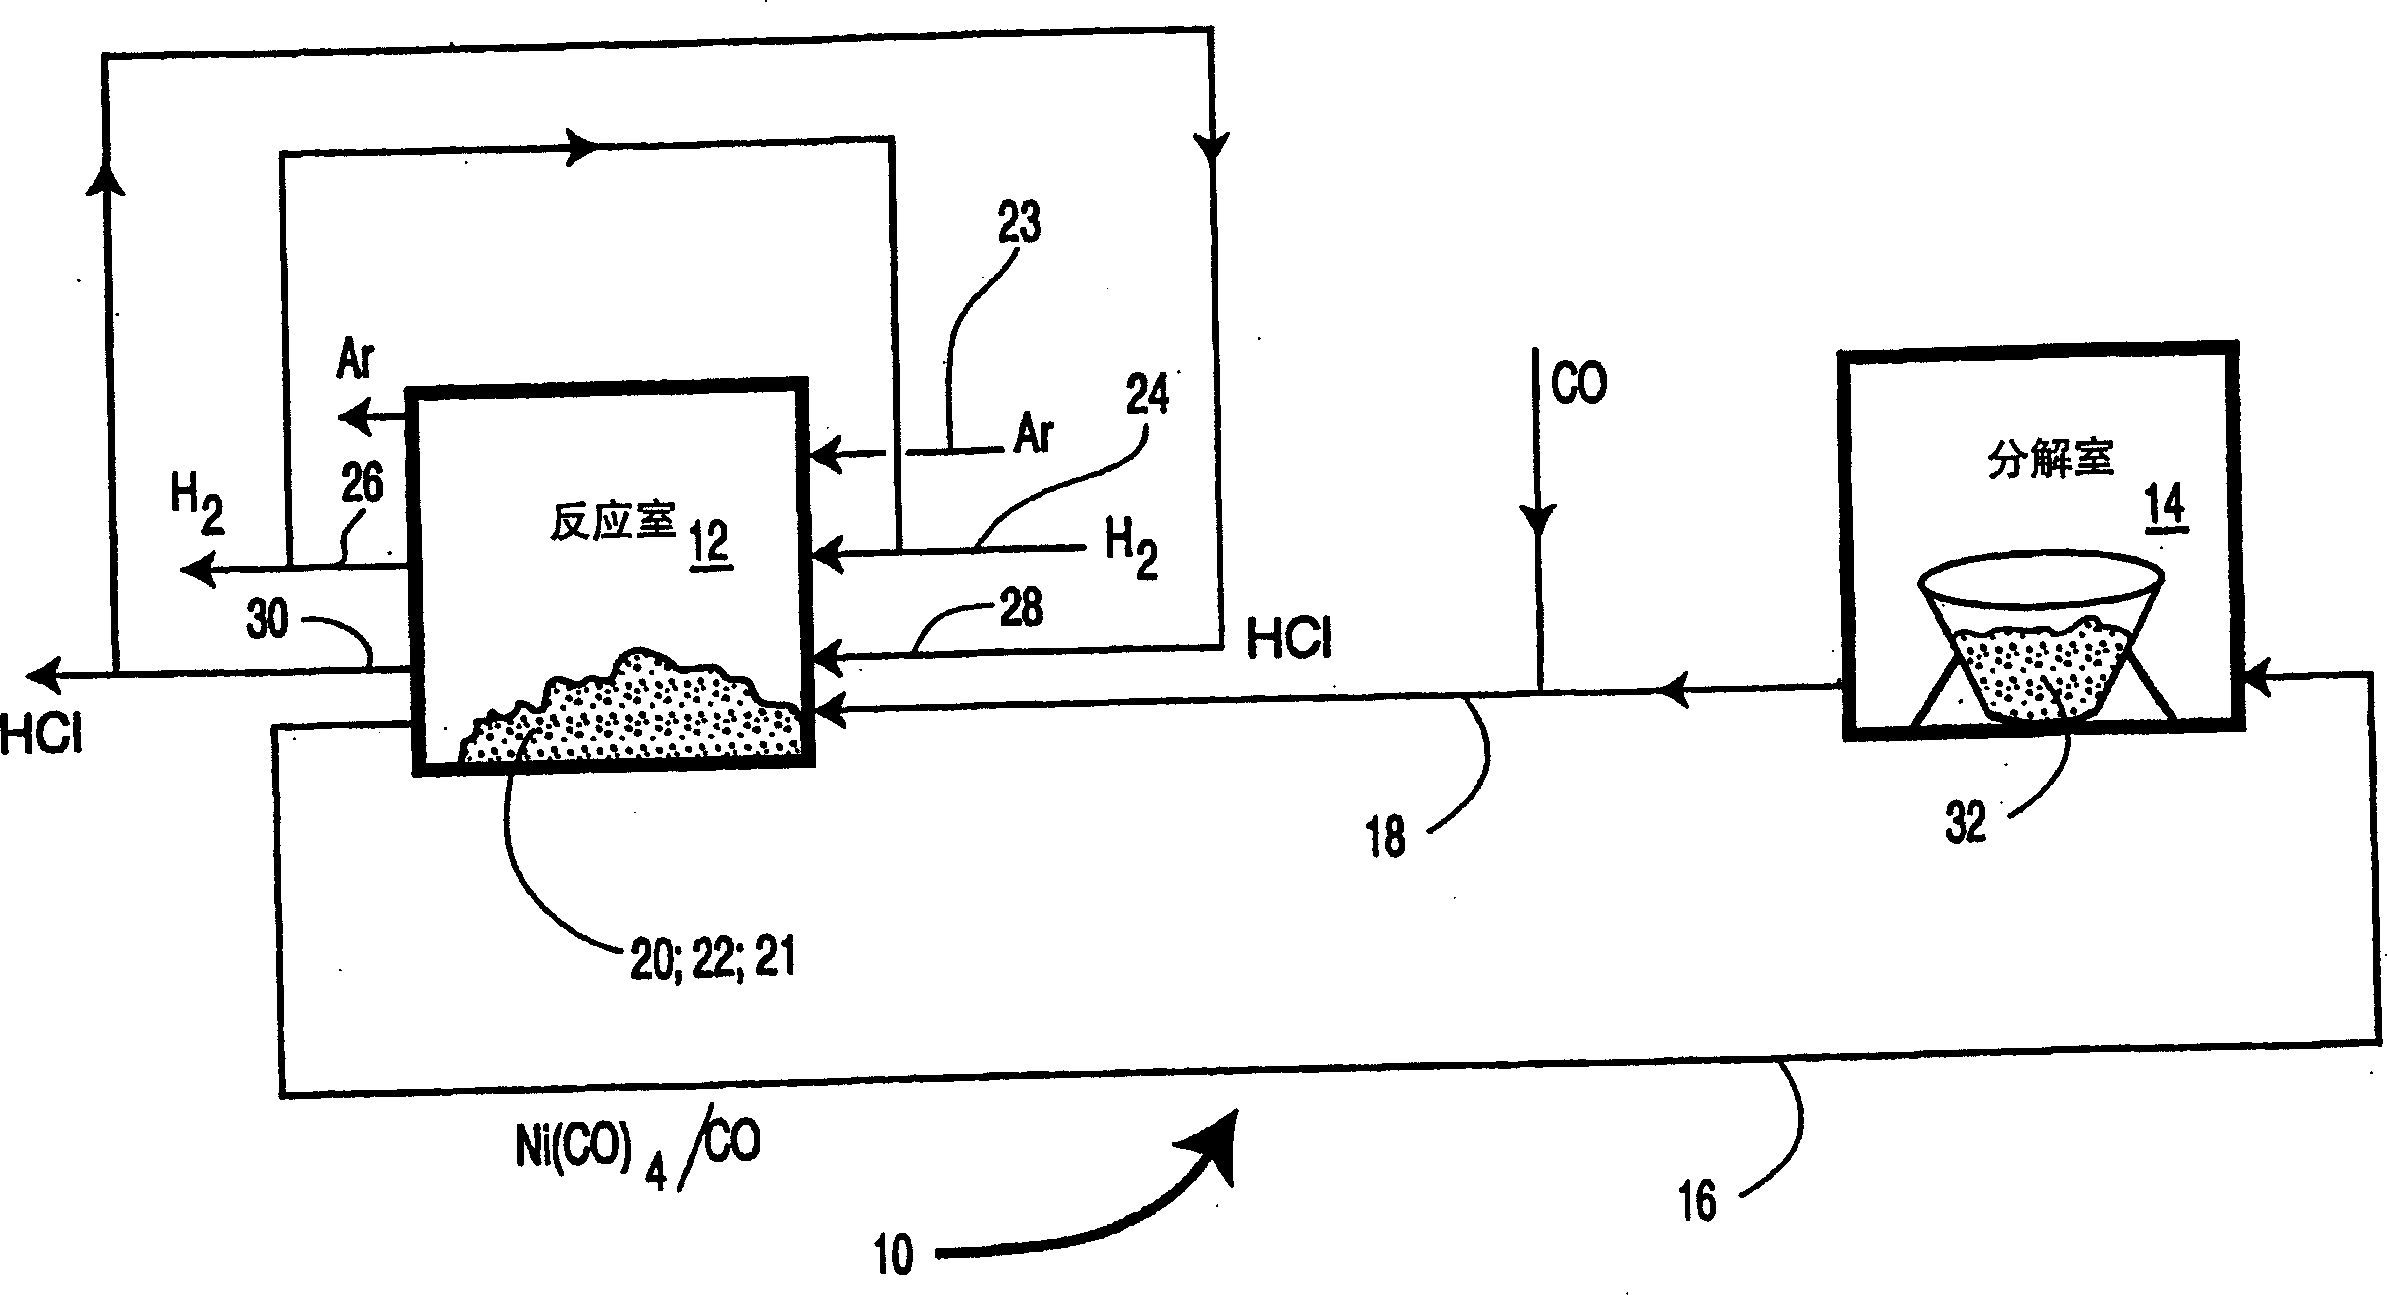 Preparation method of carbonyl nickel, nickel powder and its usage